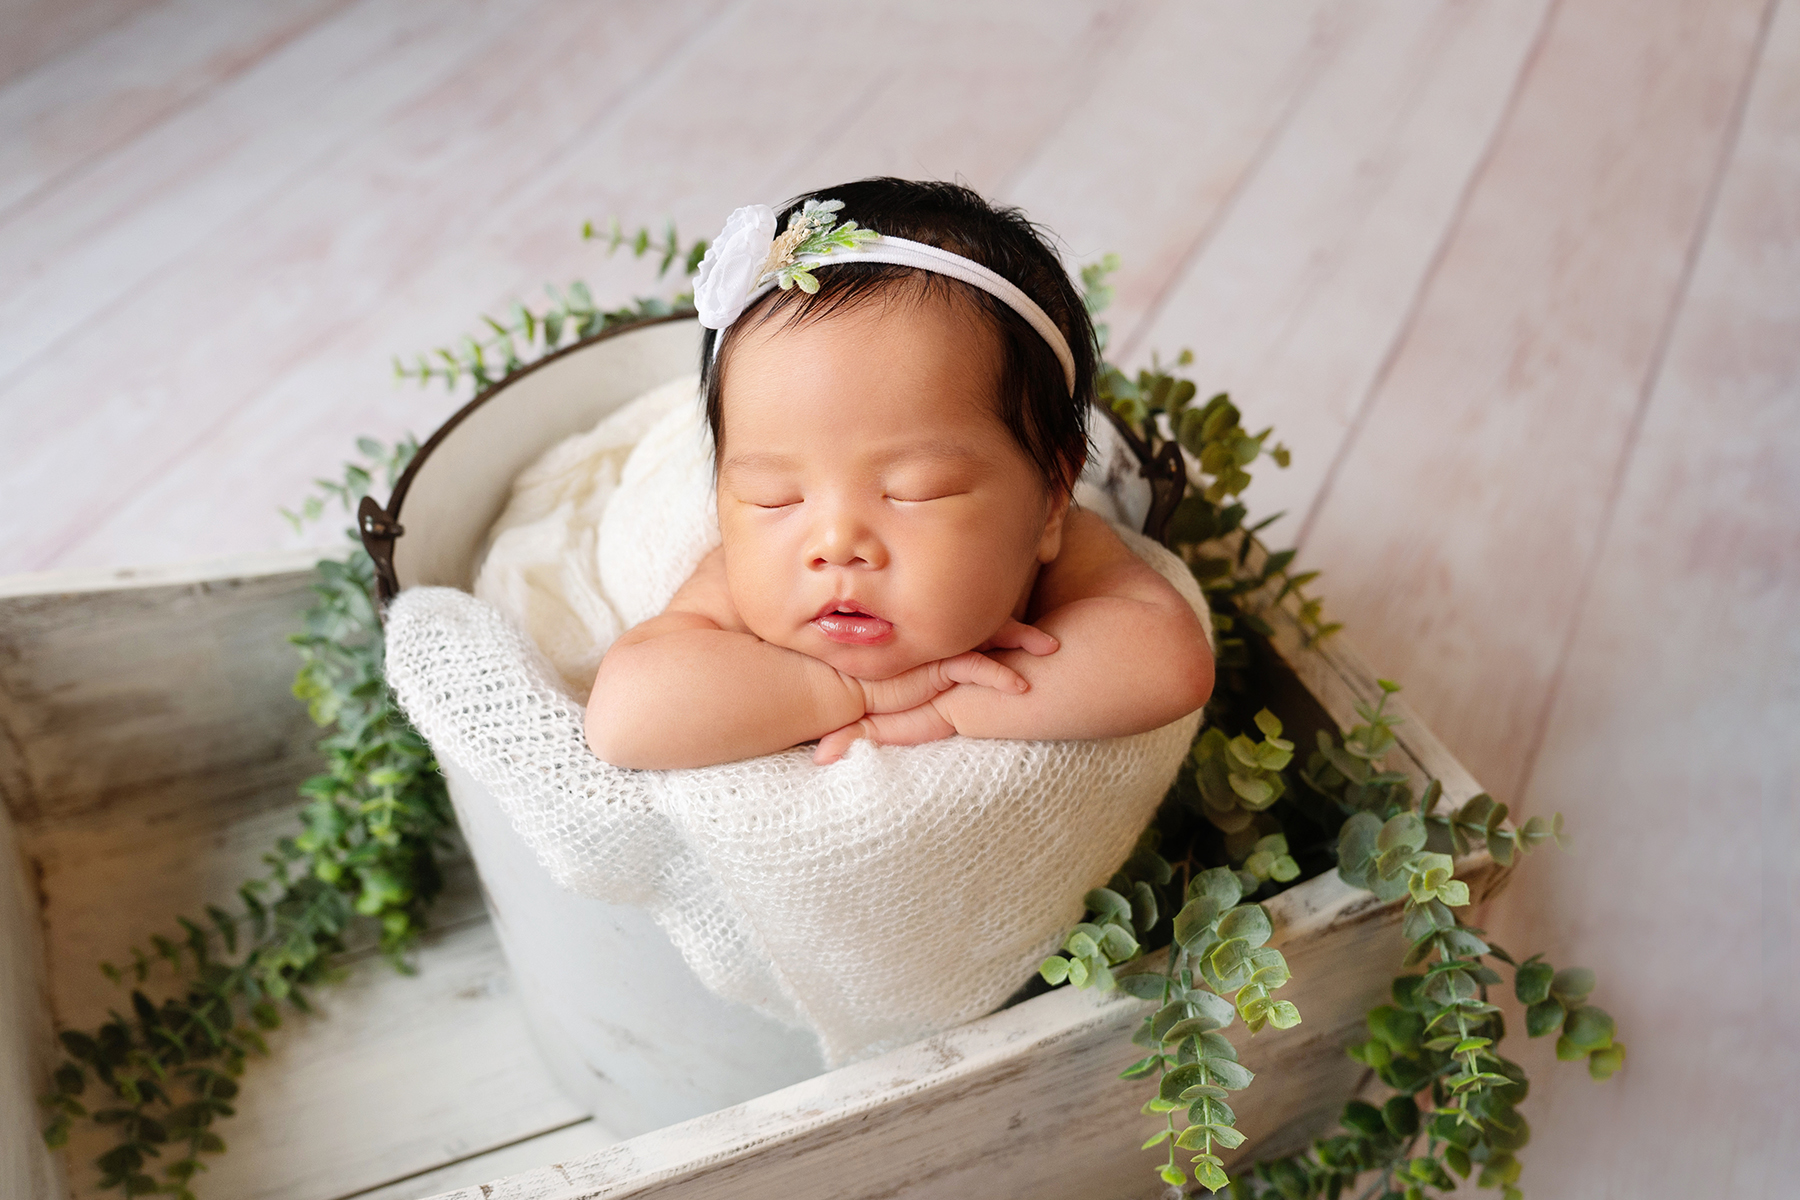 newborn photos taken in home in Aubrey Texas by photographer